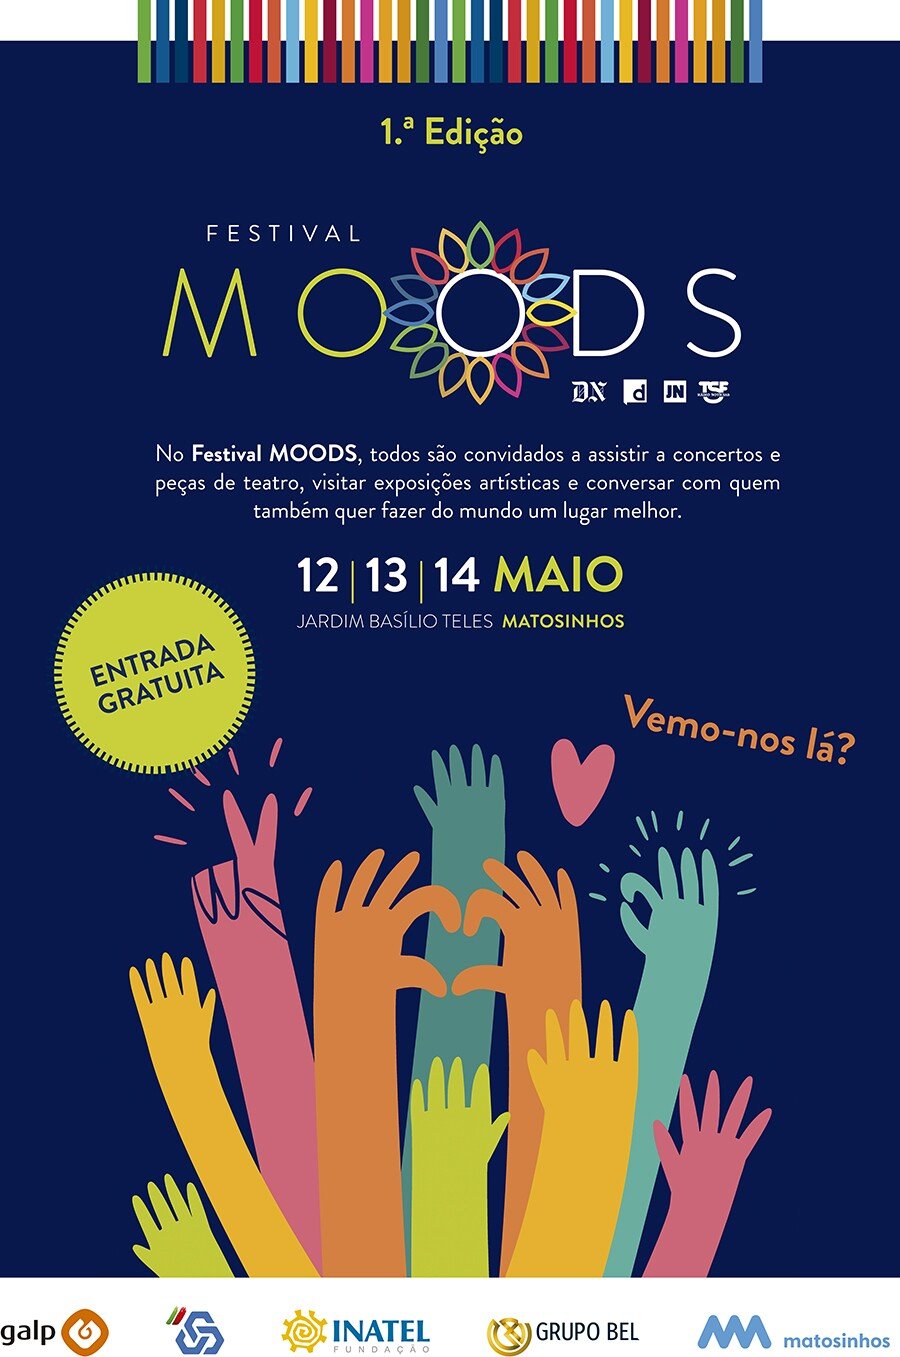 Festival Moods